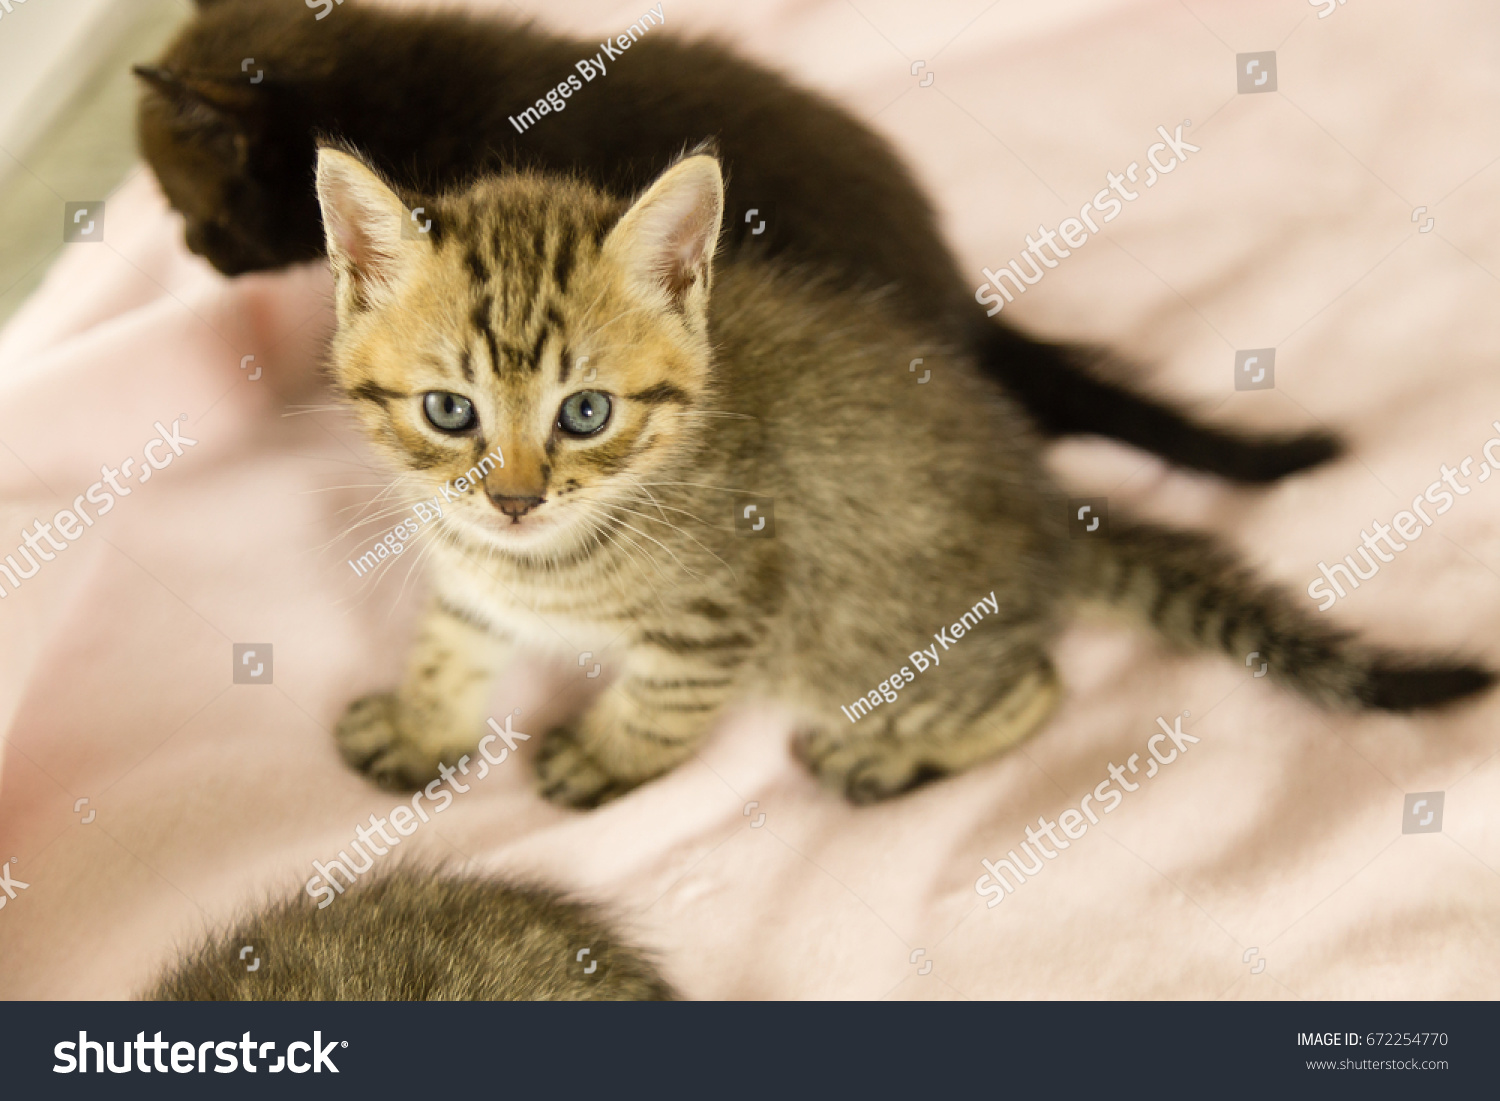 tiger tabby kitten